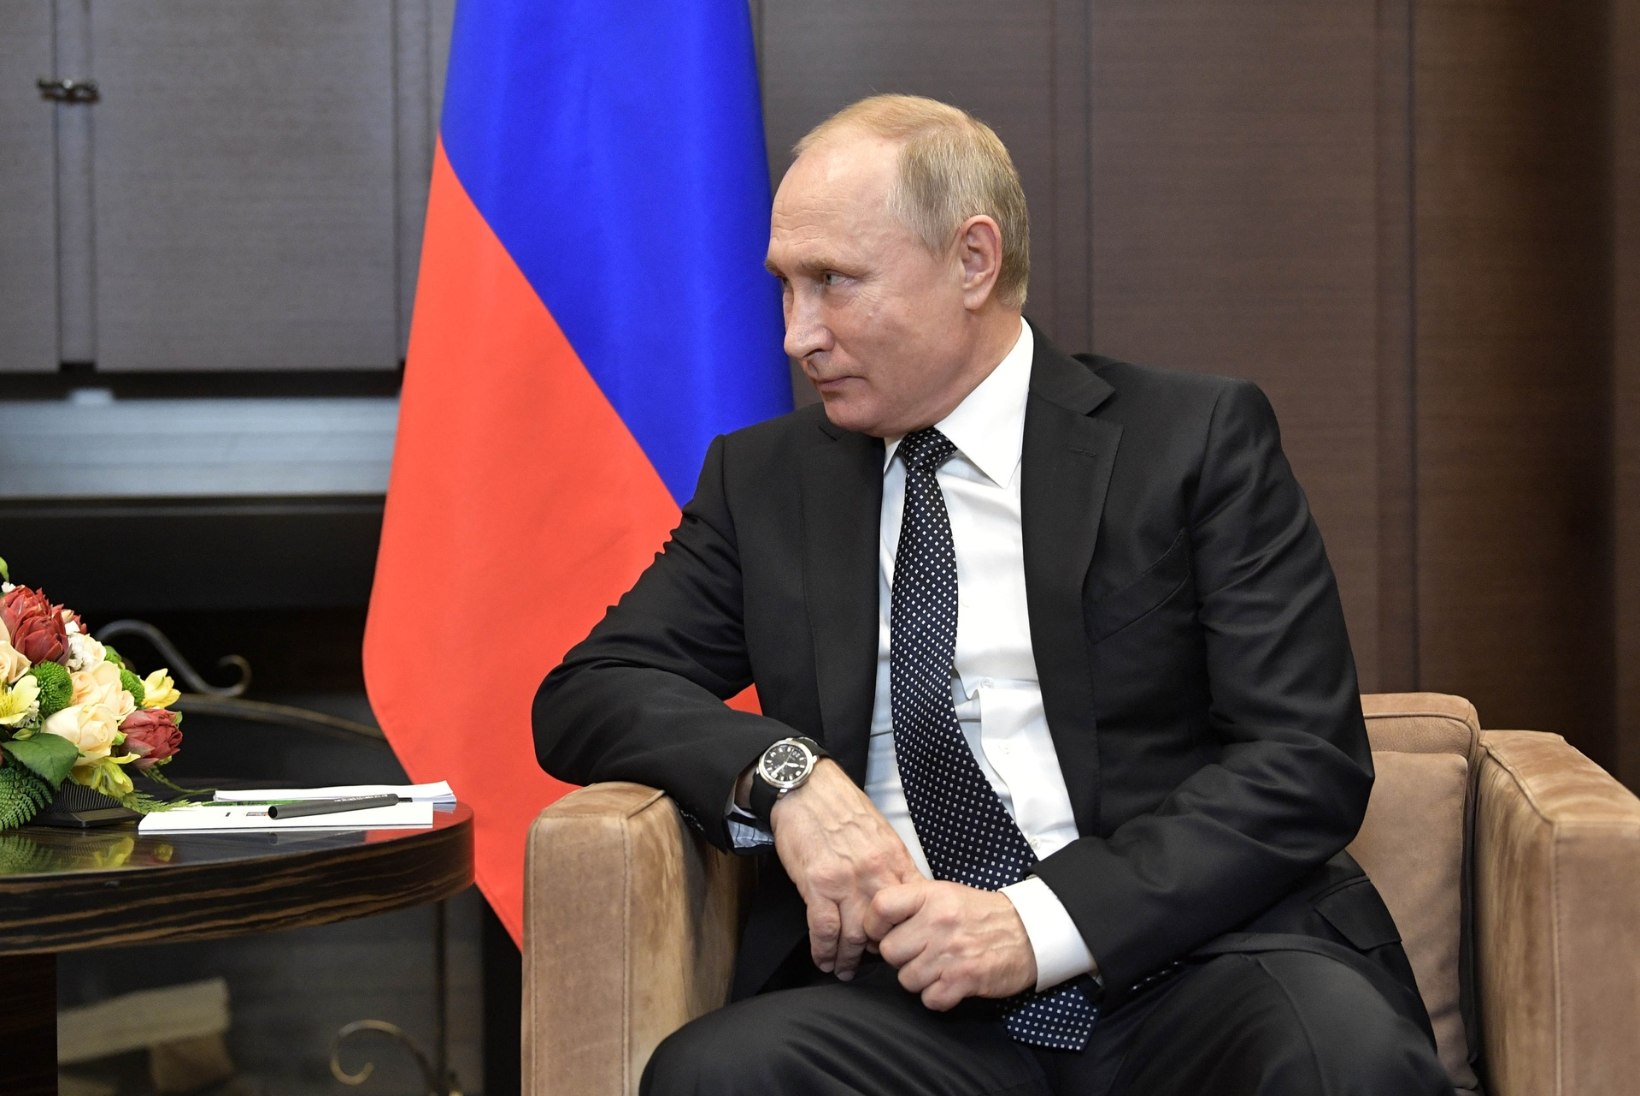 Moskvas harjutati Putini põgenemist Kremlist?